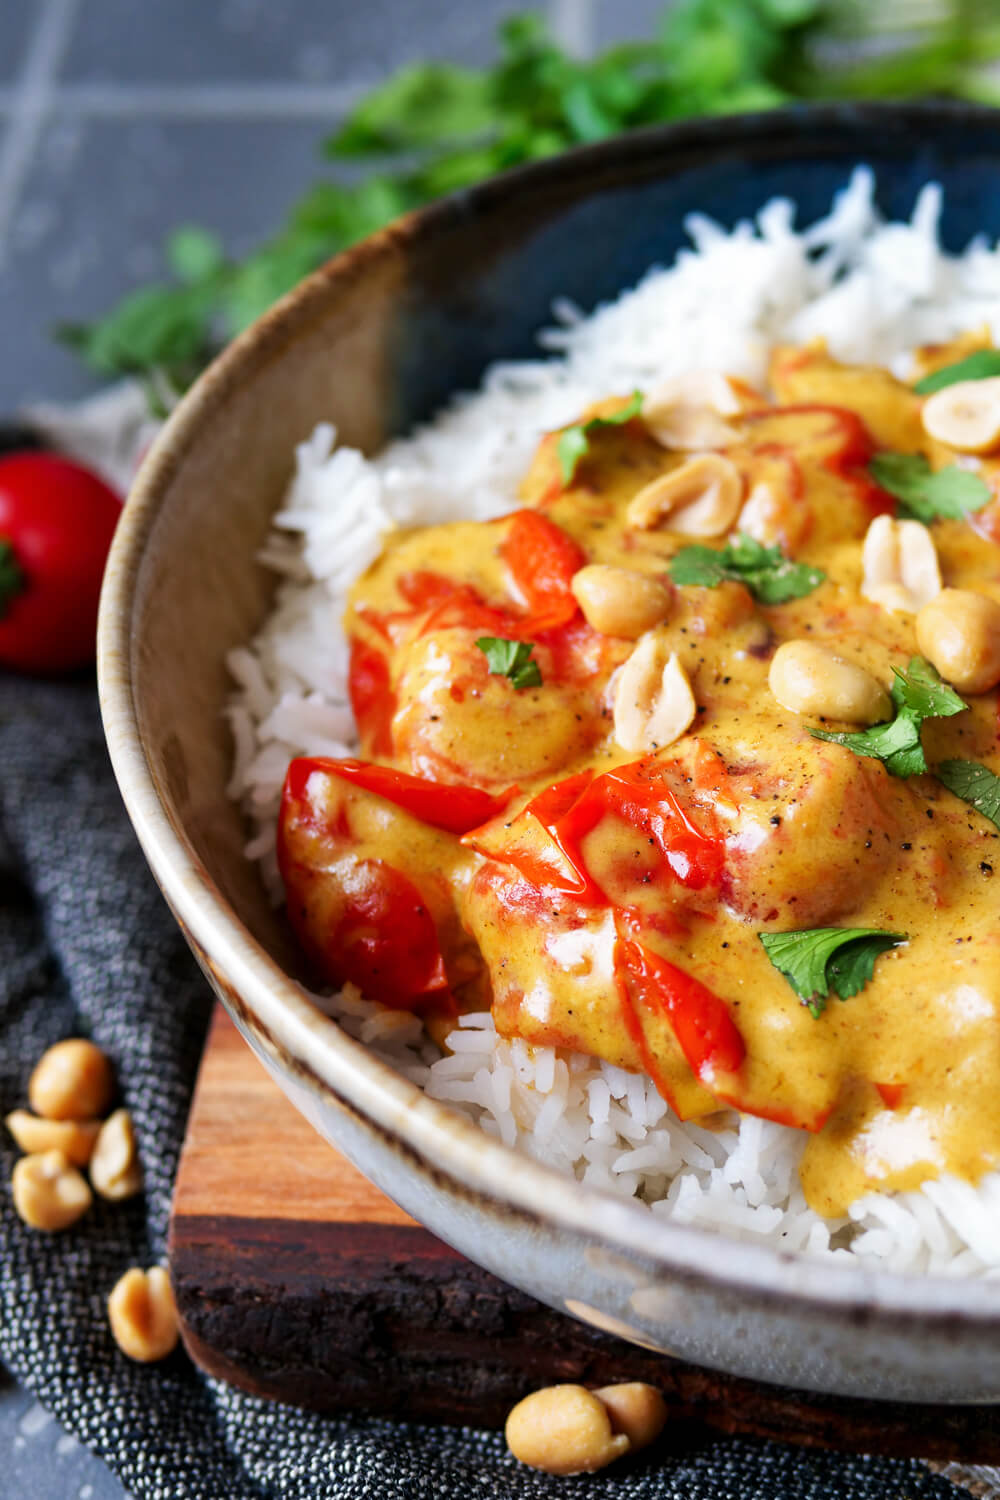 Erdnuss-Curry mit Reis auf einem Teller angerichtet.